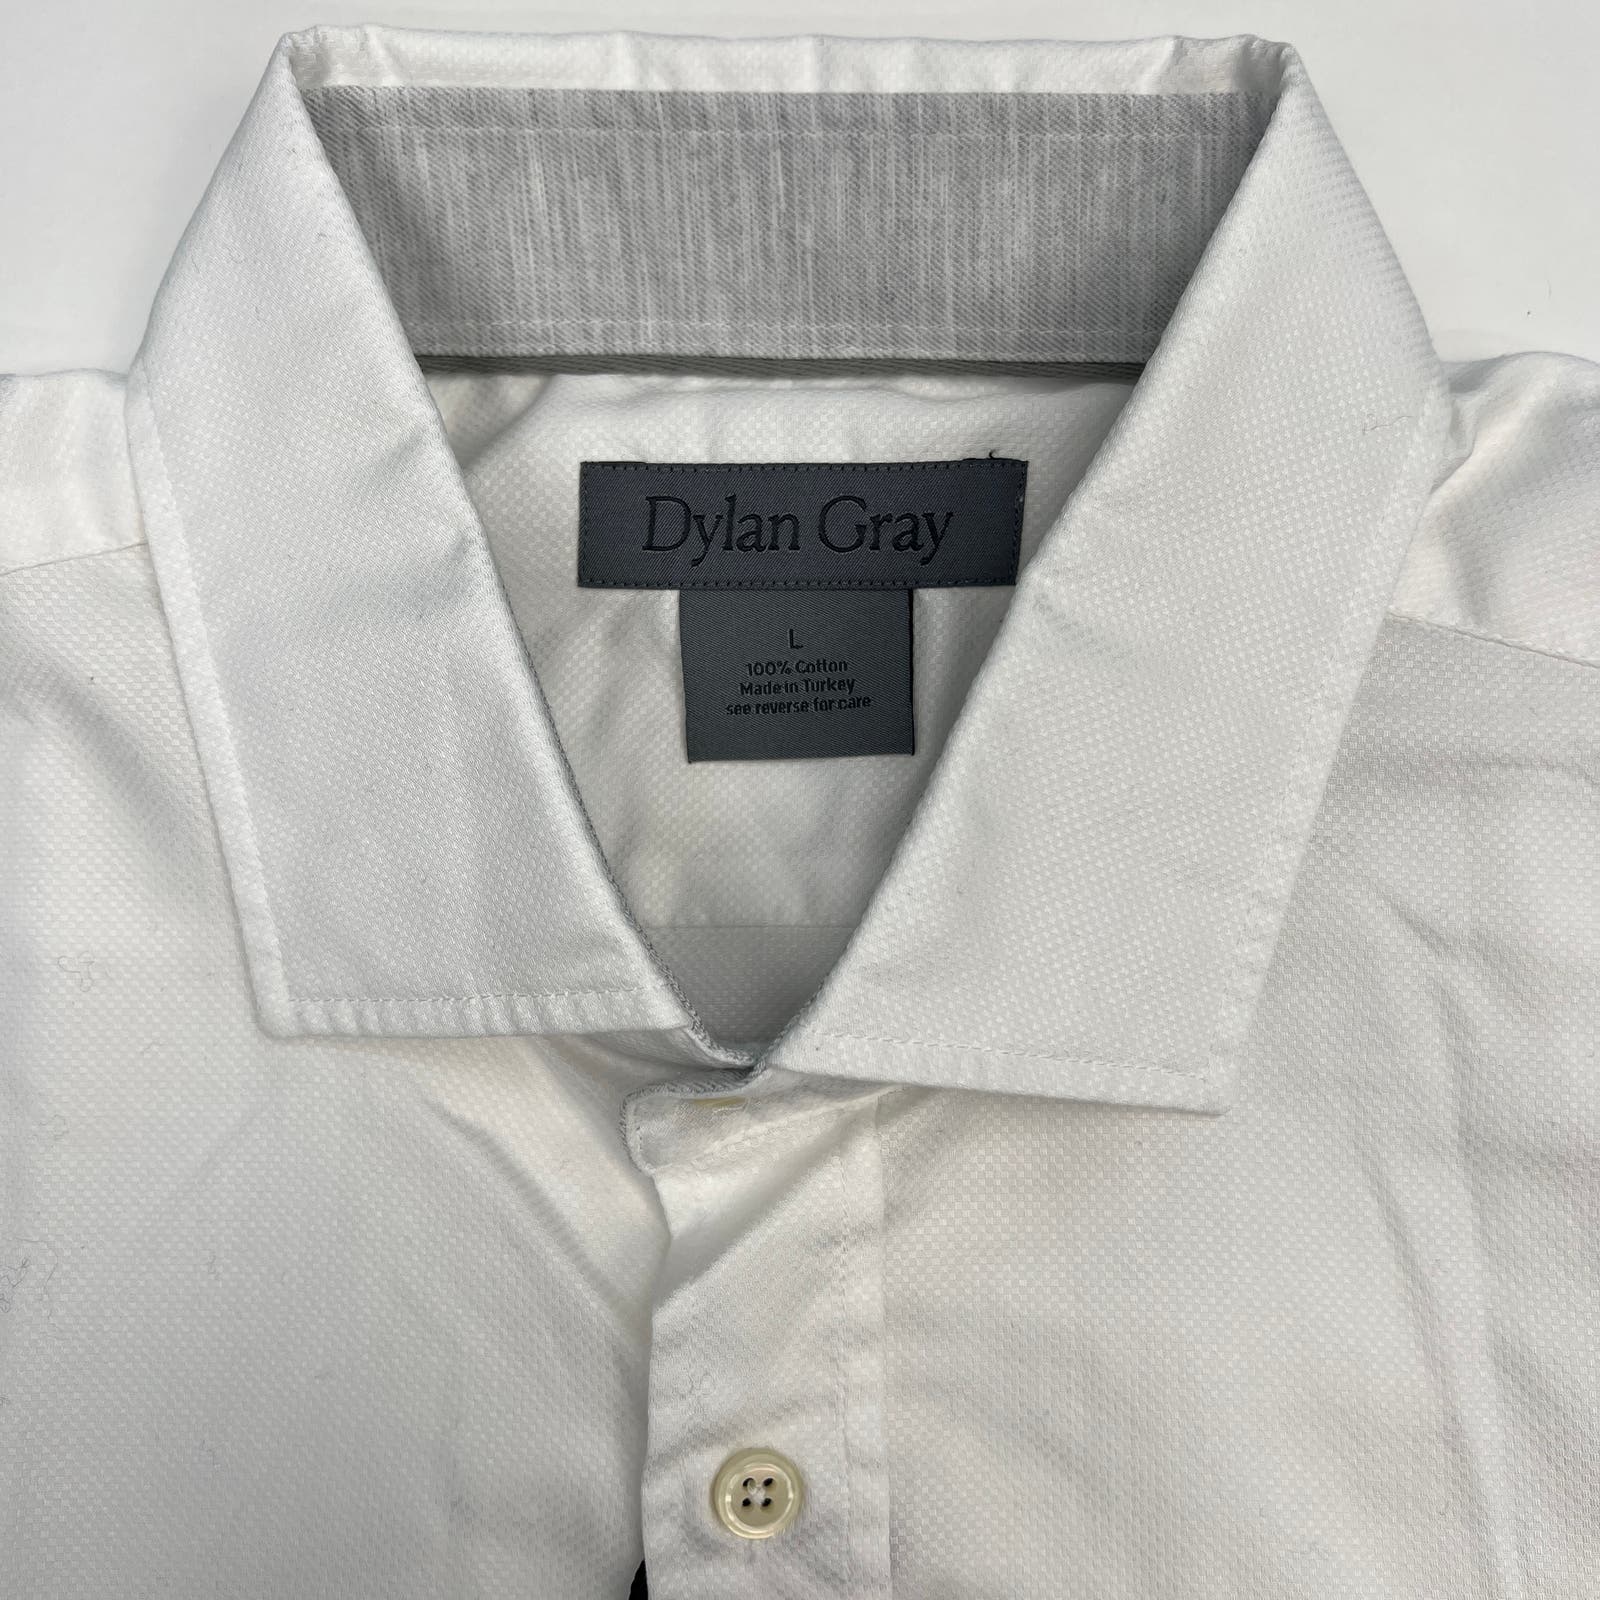 Dylan Gray Men White Cotton Dress US L  Long Sleeve Button-down